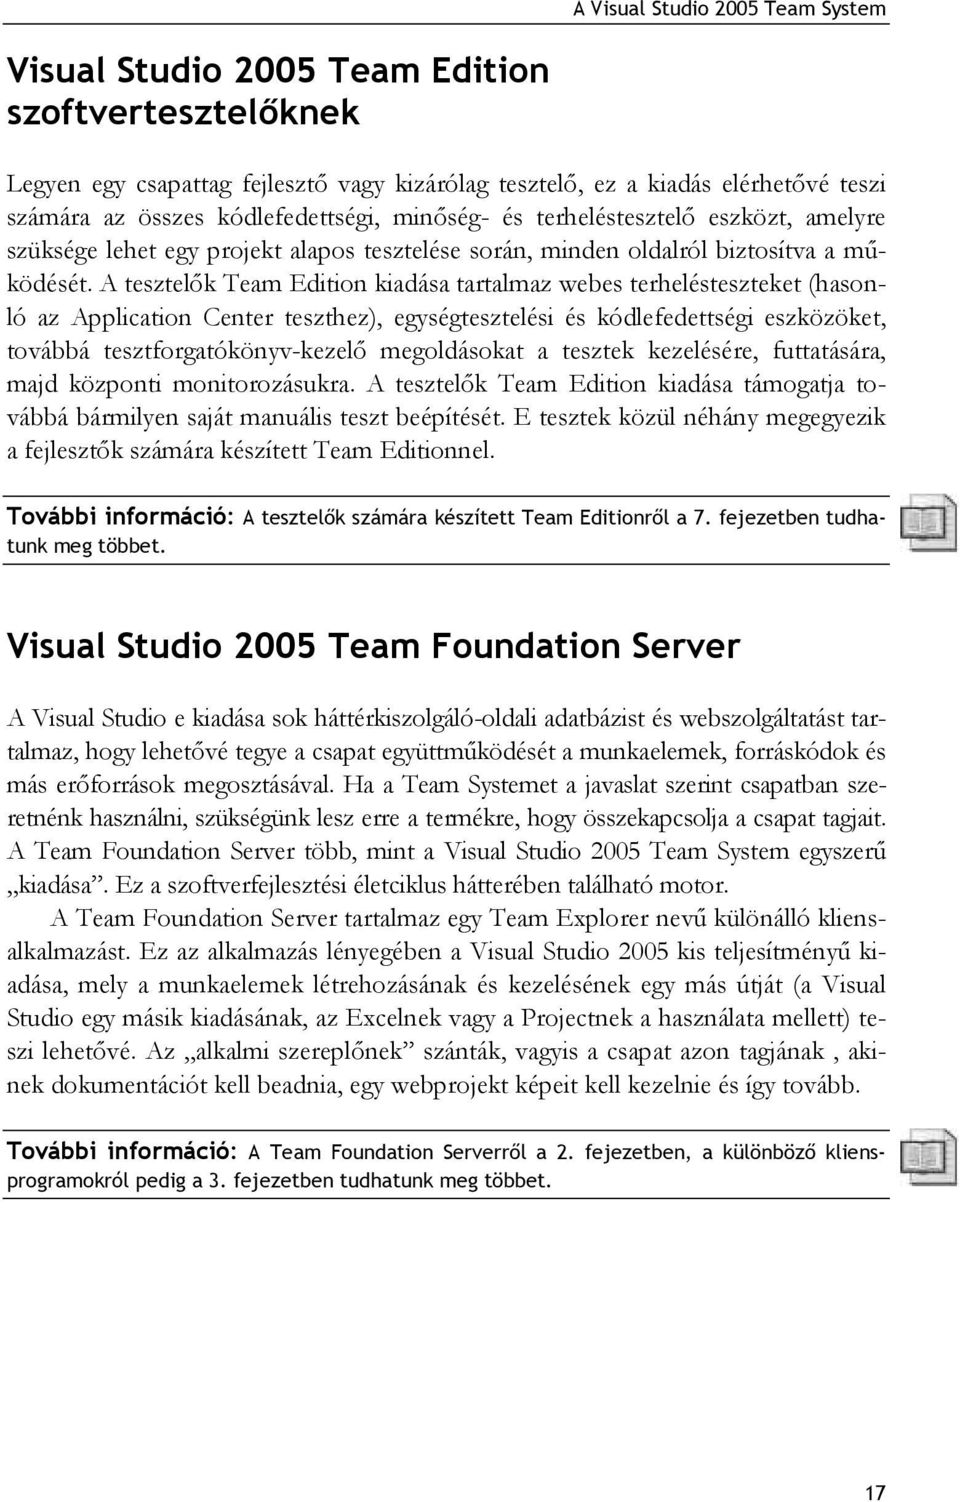 A tesztelők Team Edition kiadása tartalmaz webes terhelésteszteket (hasonló az Application Center teszthez), egységtesztelési és kódlefedettségi eszközöket, továbbá tesztforgatókönyv-kezelő